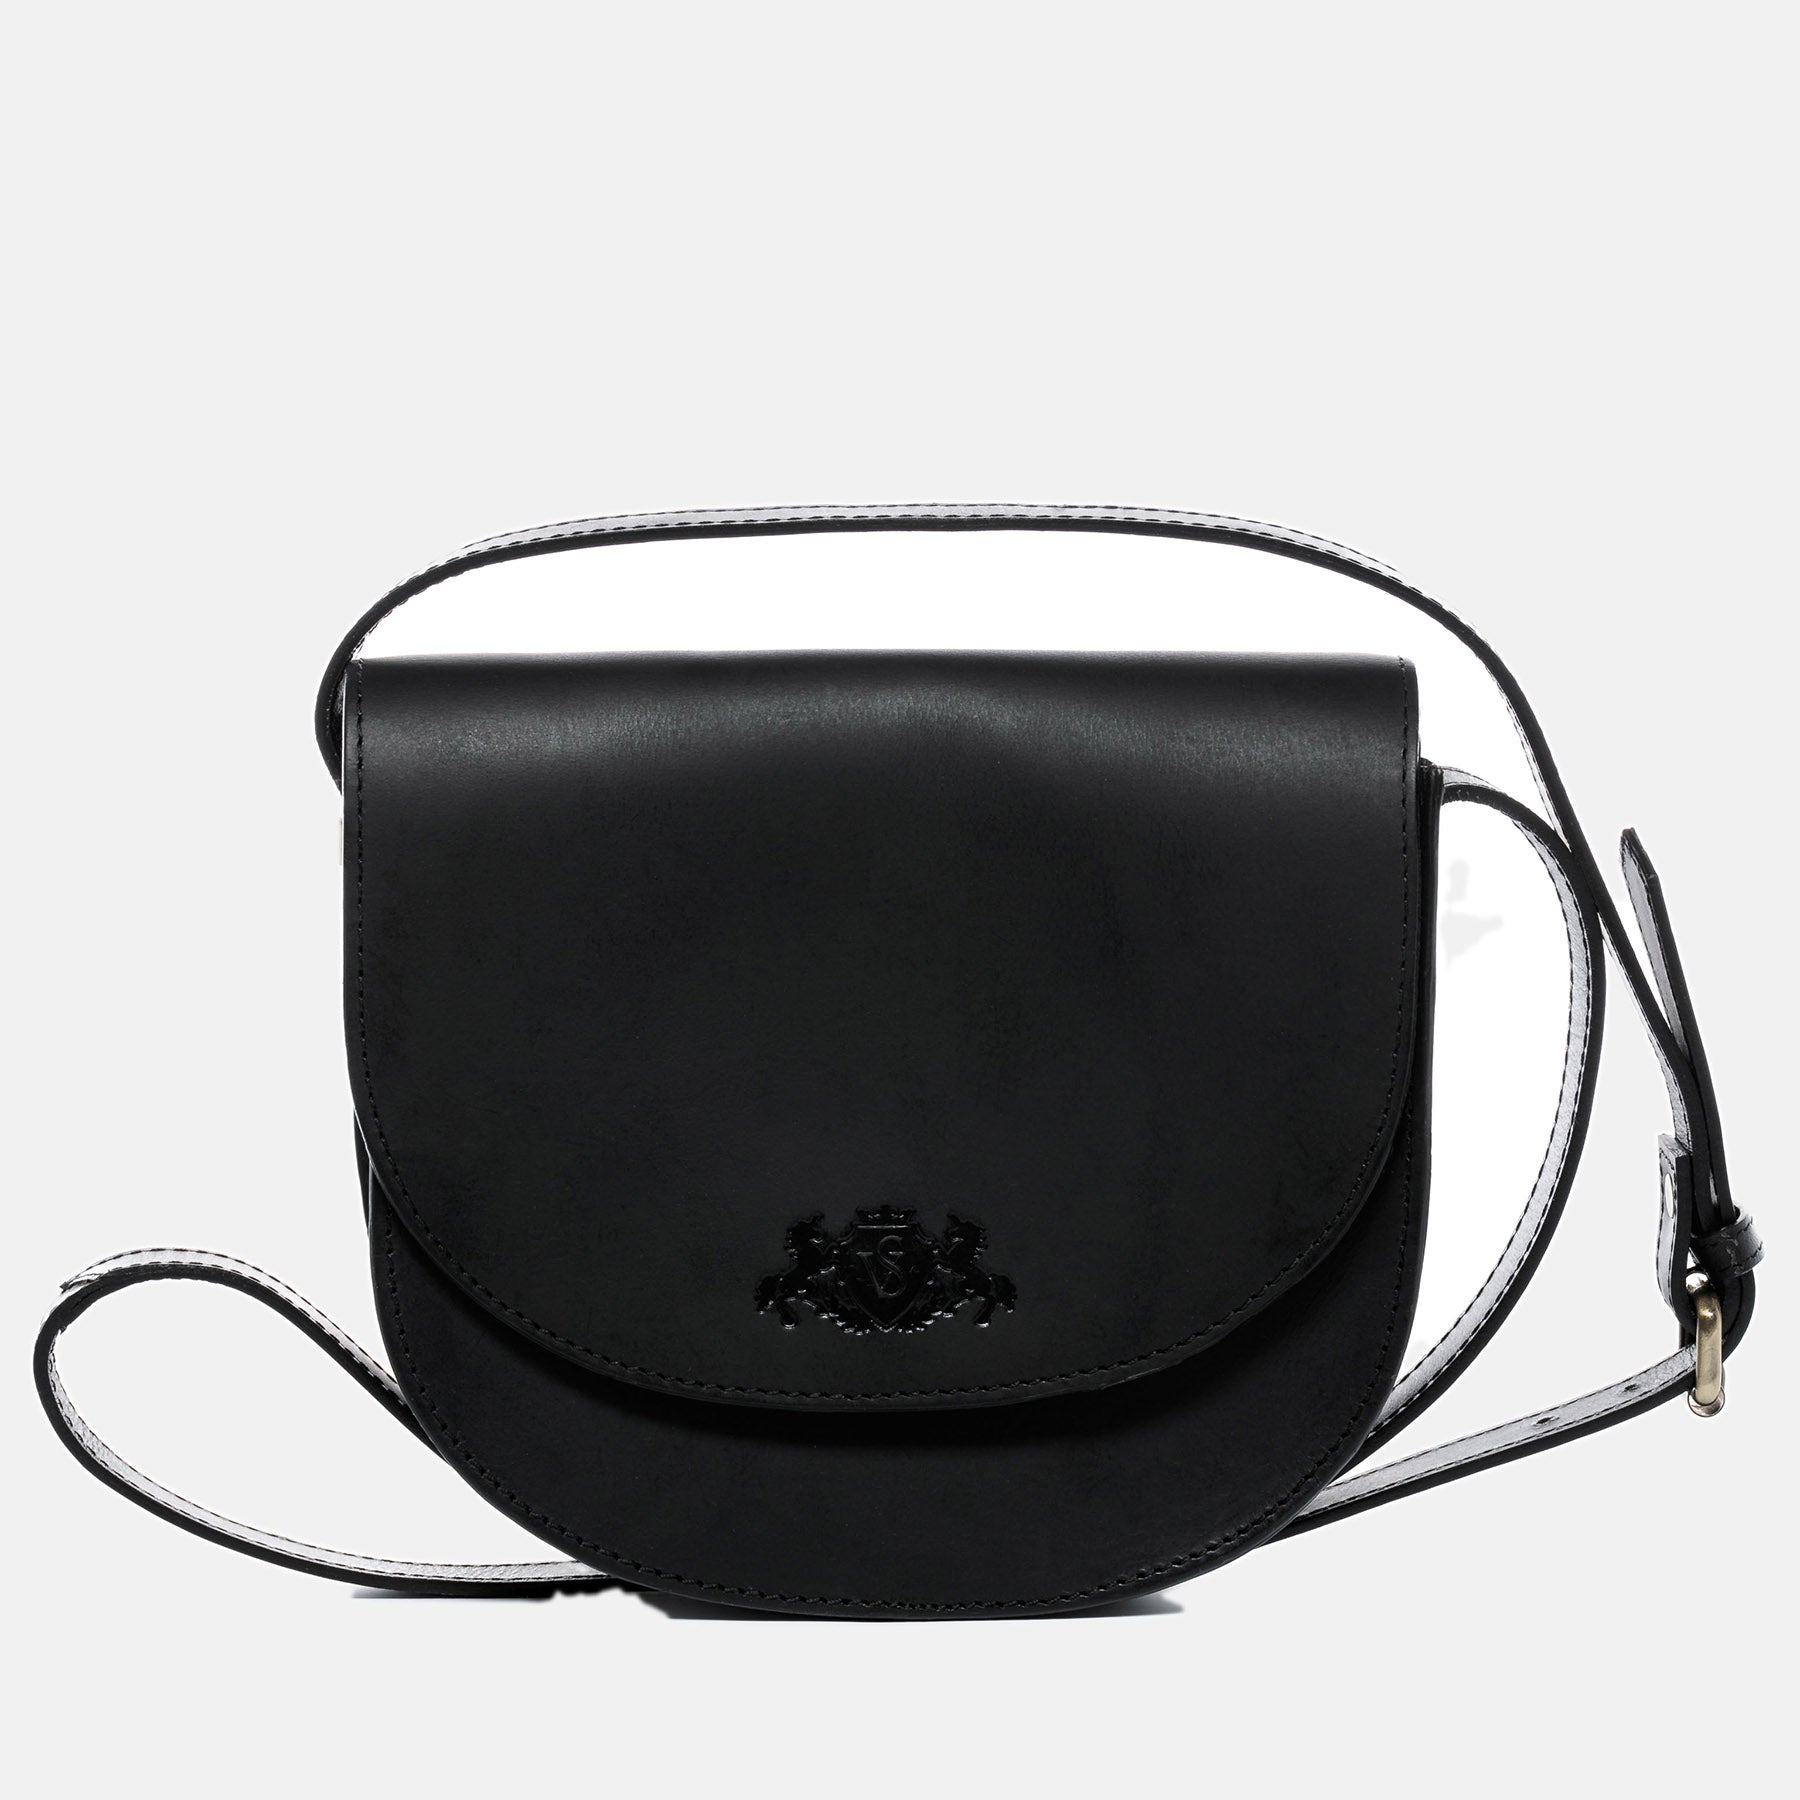 Shoulder bag TRISH saddle leather black